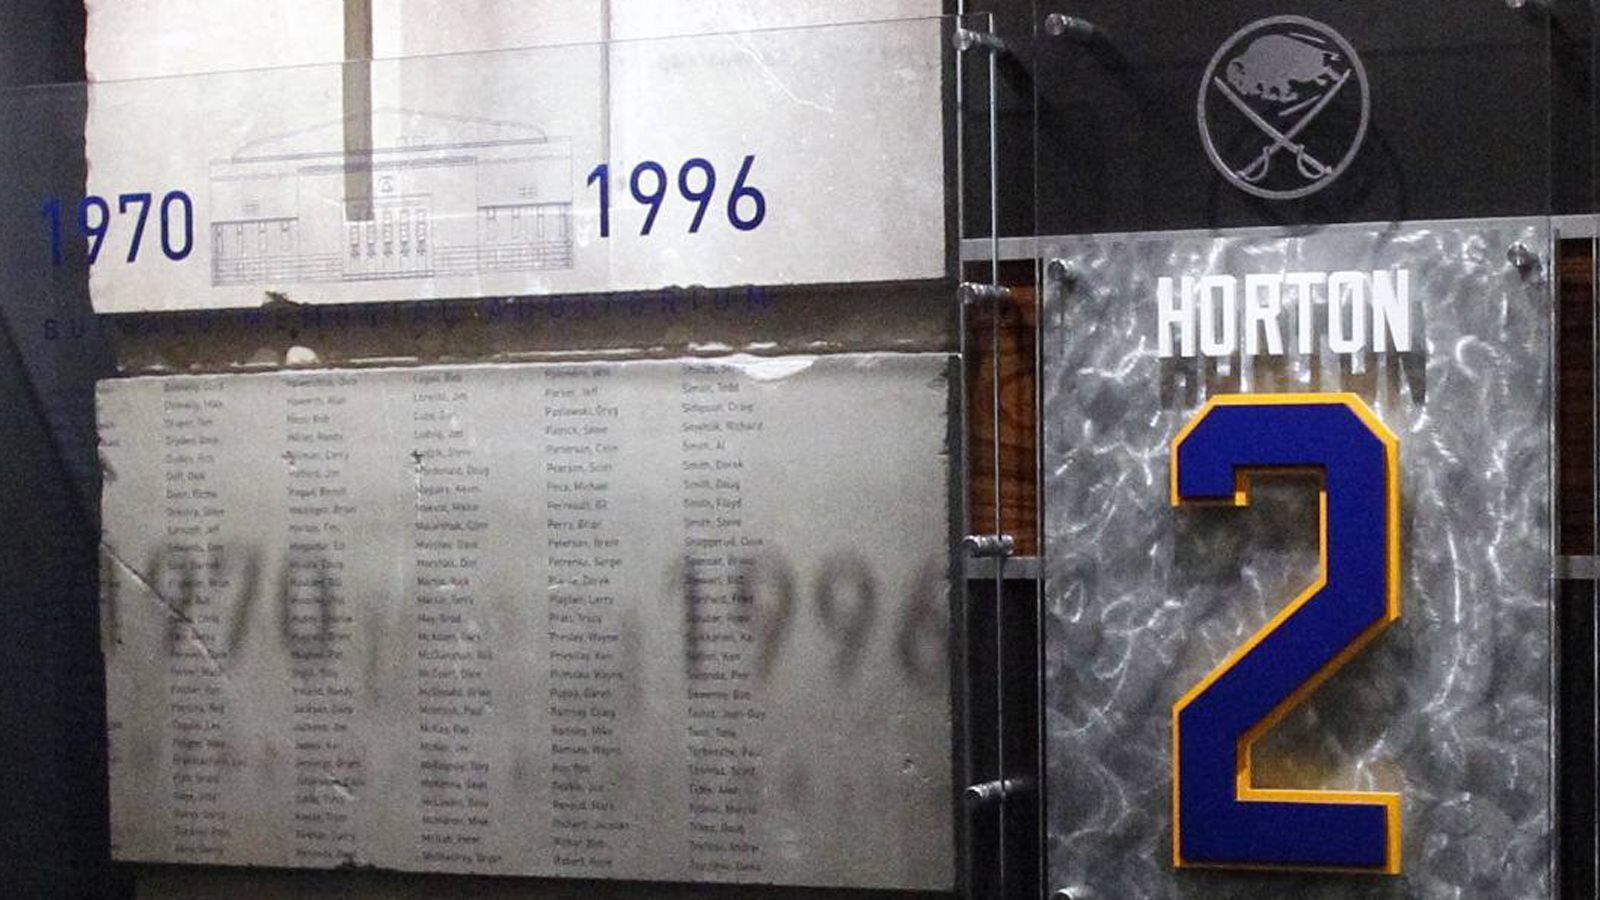 
                <strong>Platz 6: Tim Horton</strong><br>
                &#x2022; Alter beim letzten NHL-Spiel: 44 Jahre, 39 Tage -<br>&#x2022; Letztes NHL-Spiel im Jahre 1974<br>
              